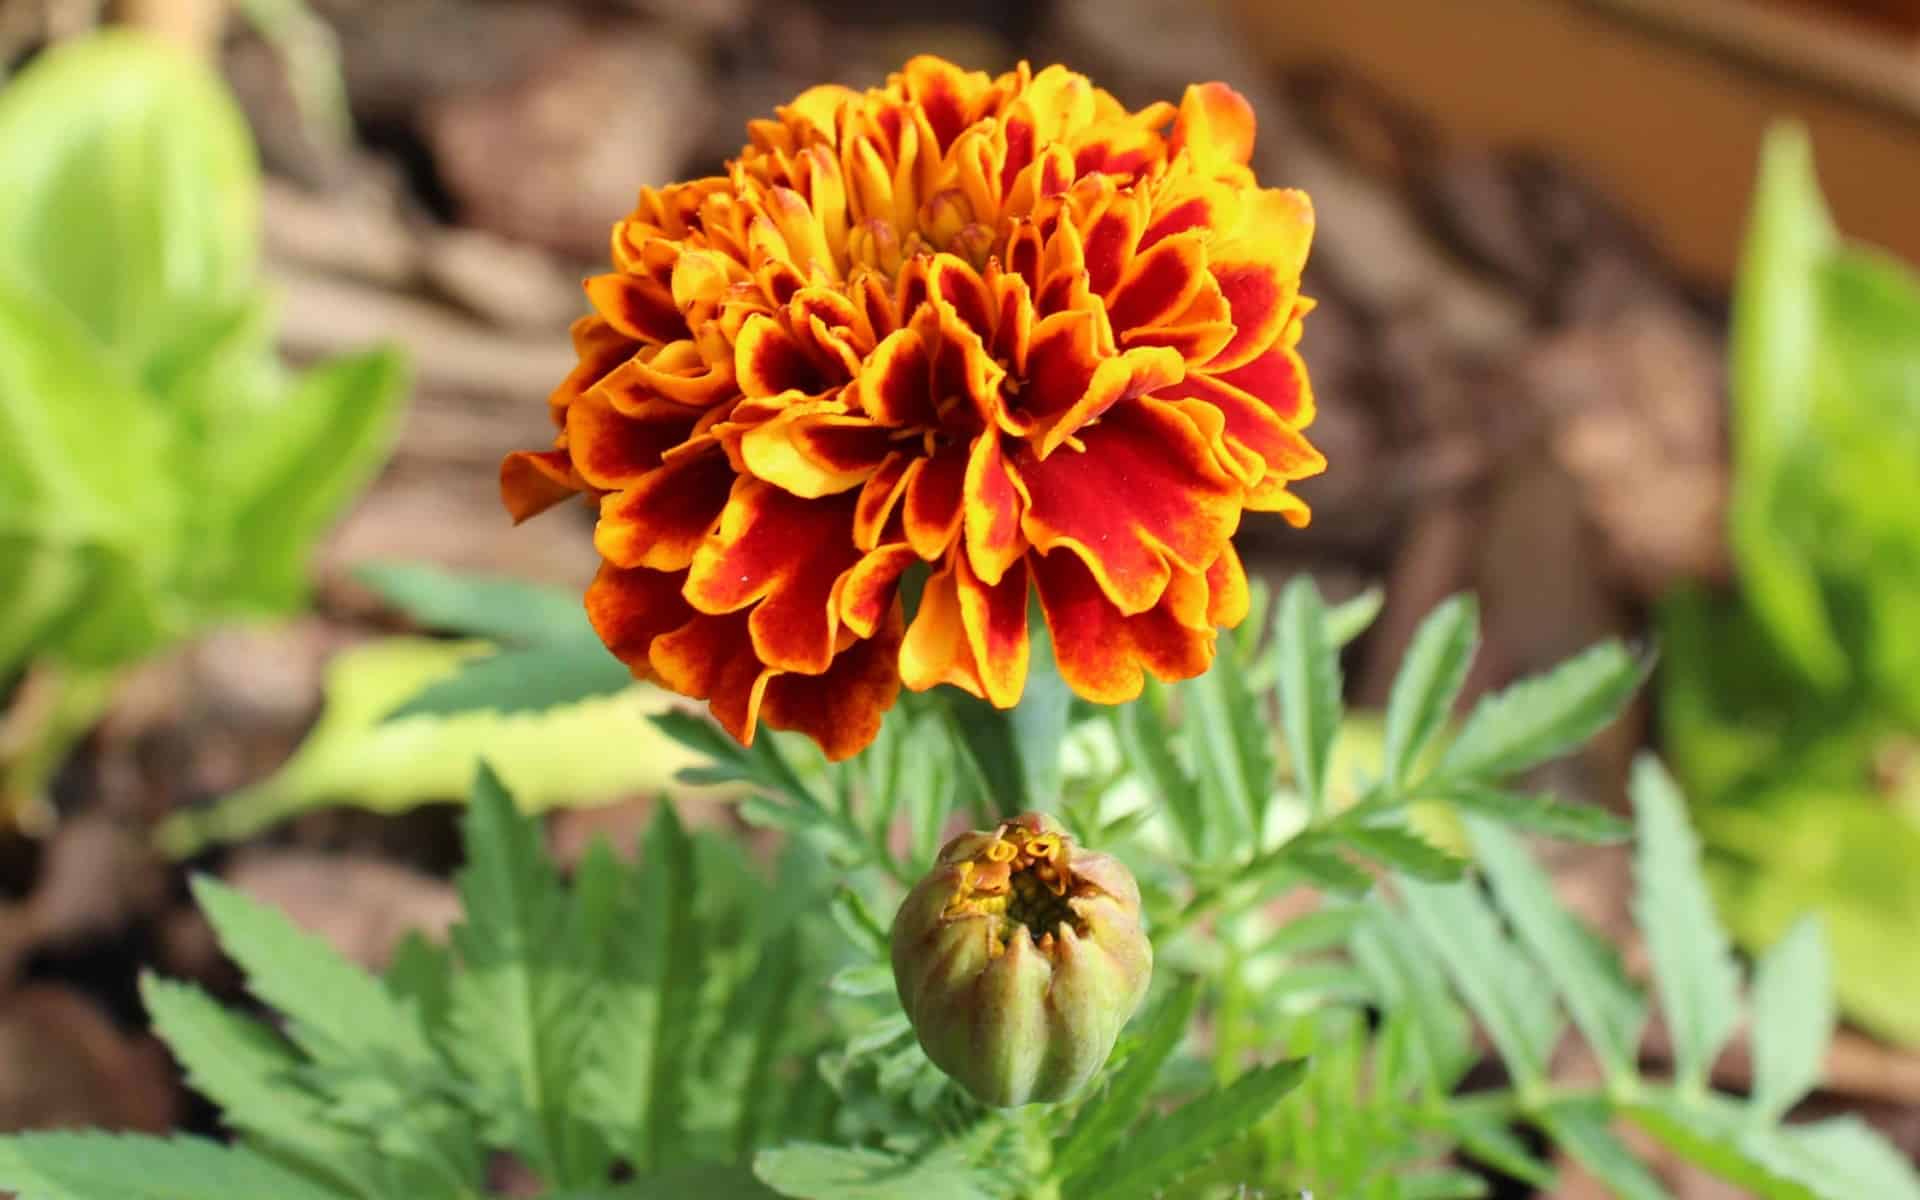 Marigold bloom